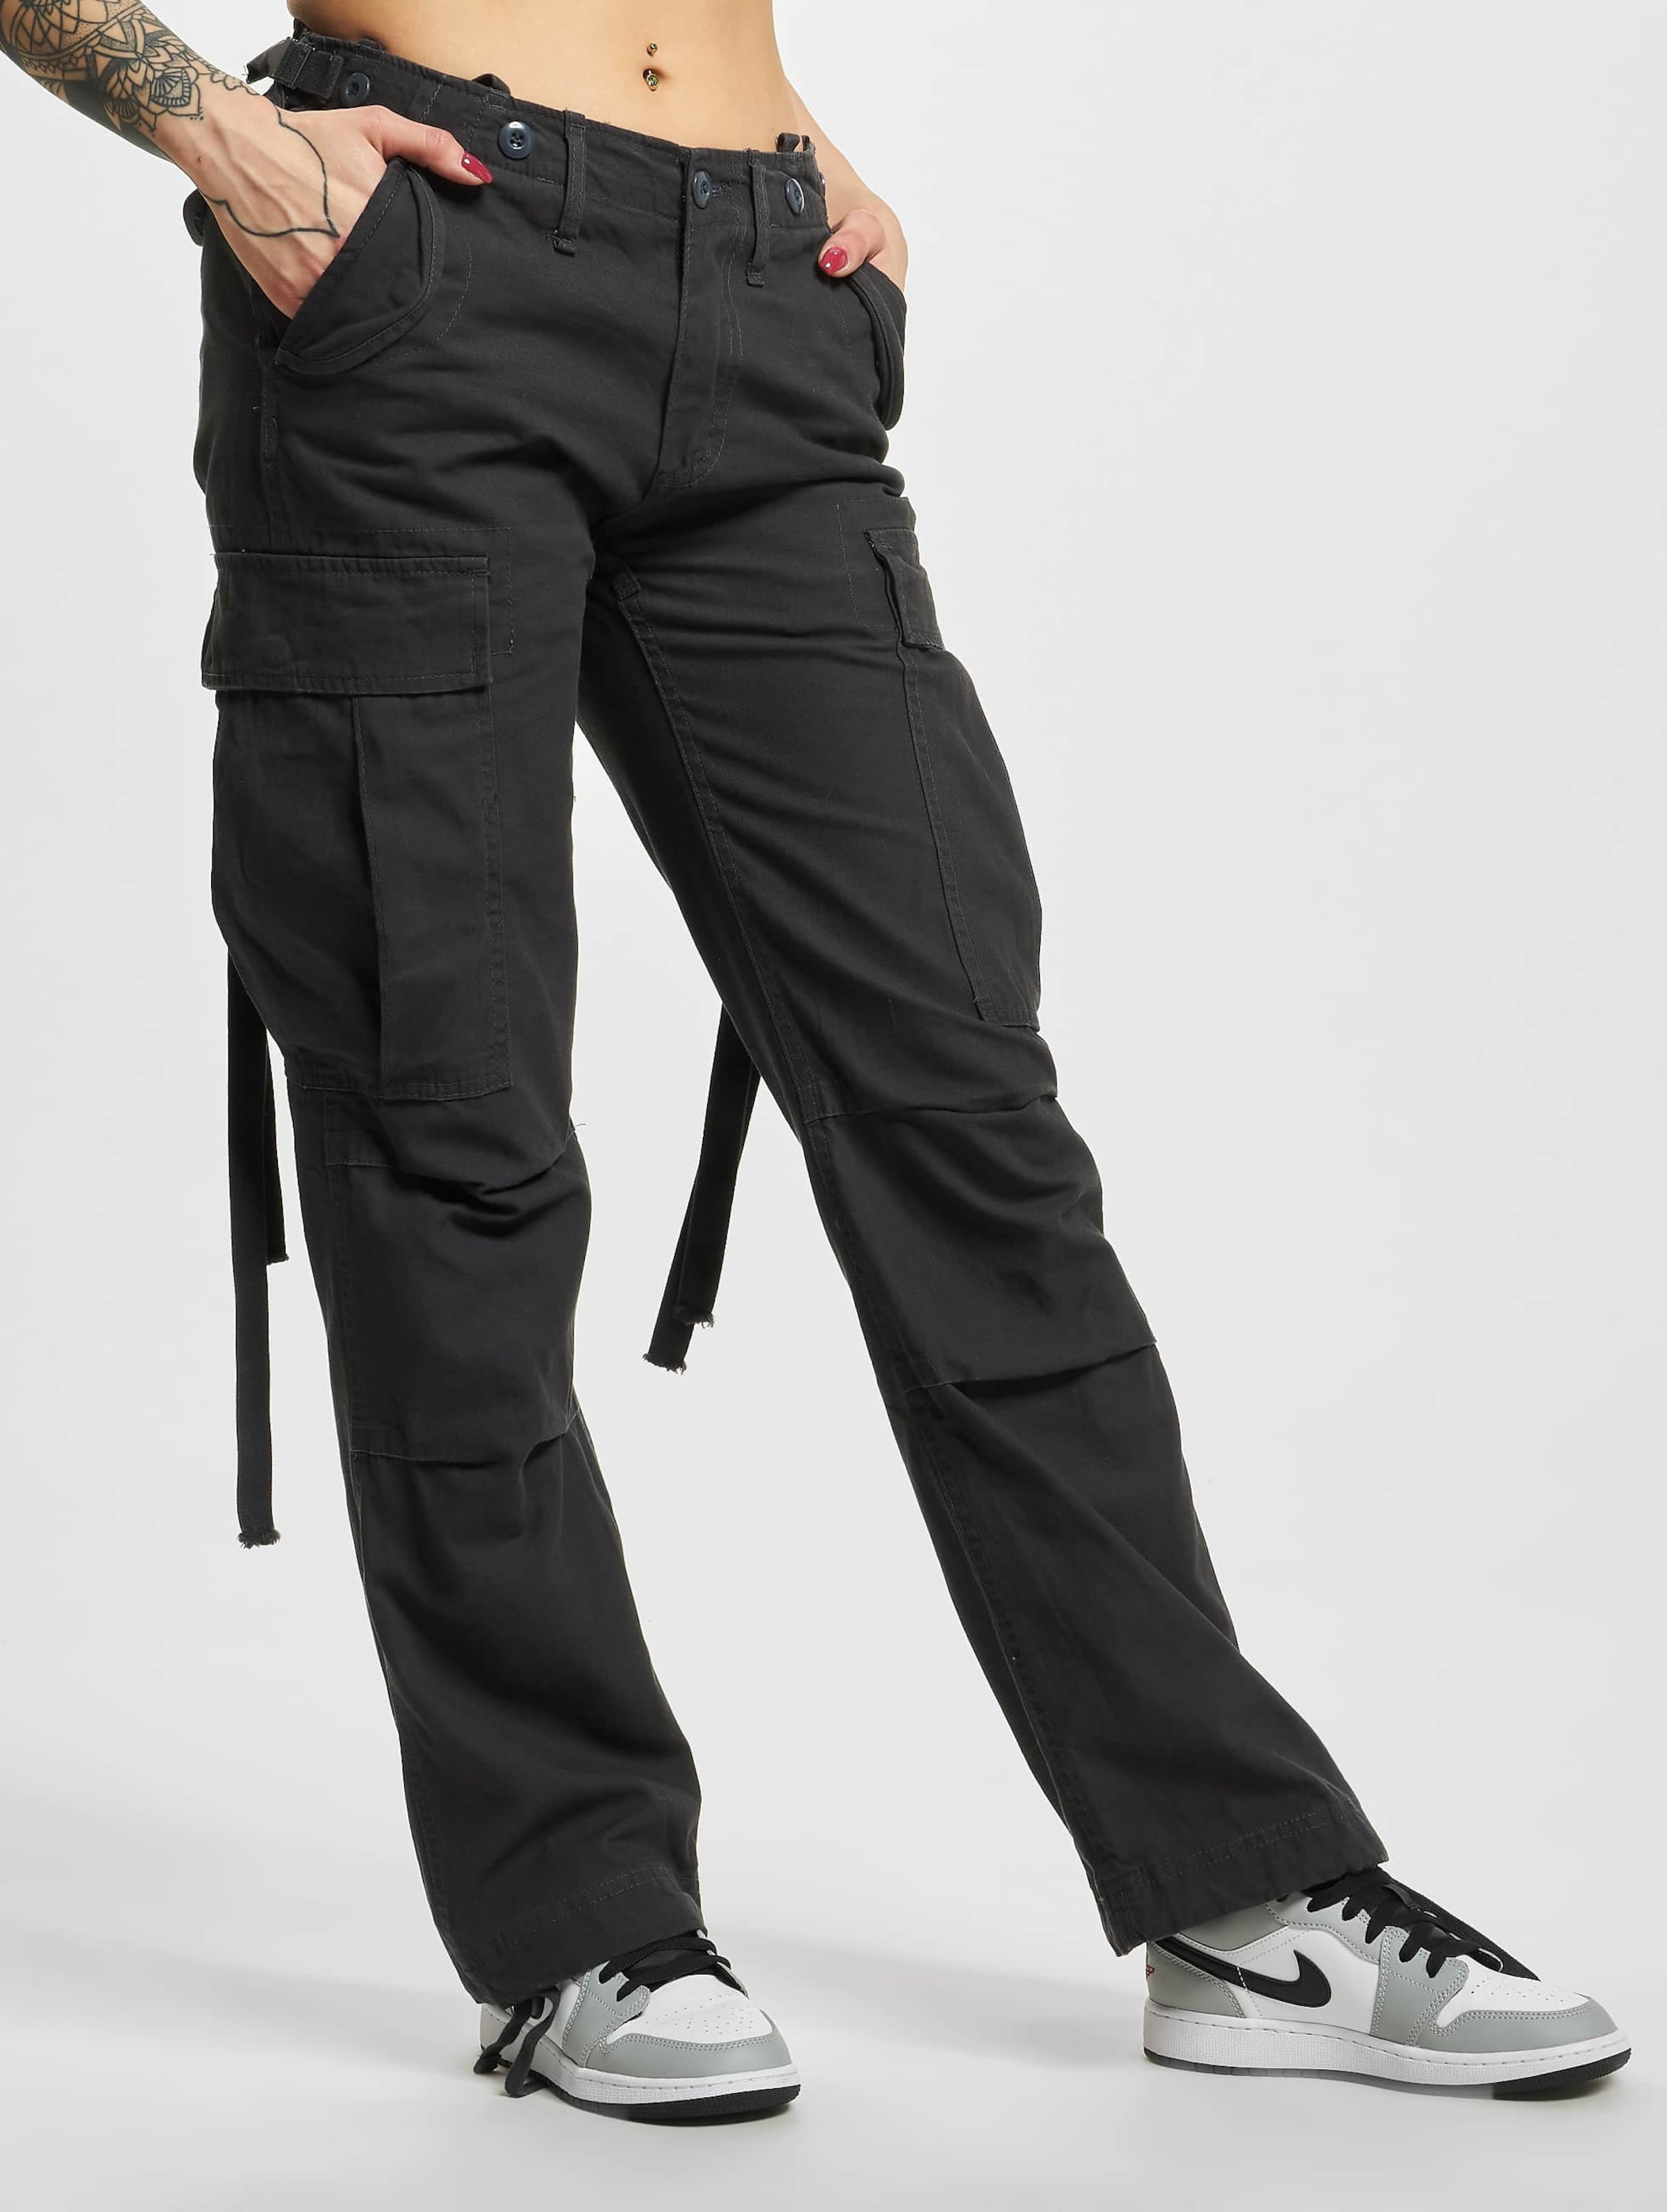 Brandit Ladies M-65 Cargo Pants Frauen,Unisex op kleur grijs, Maat 27